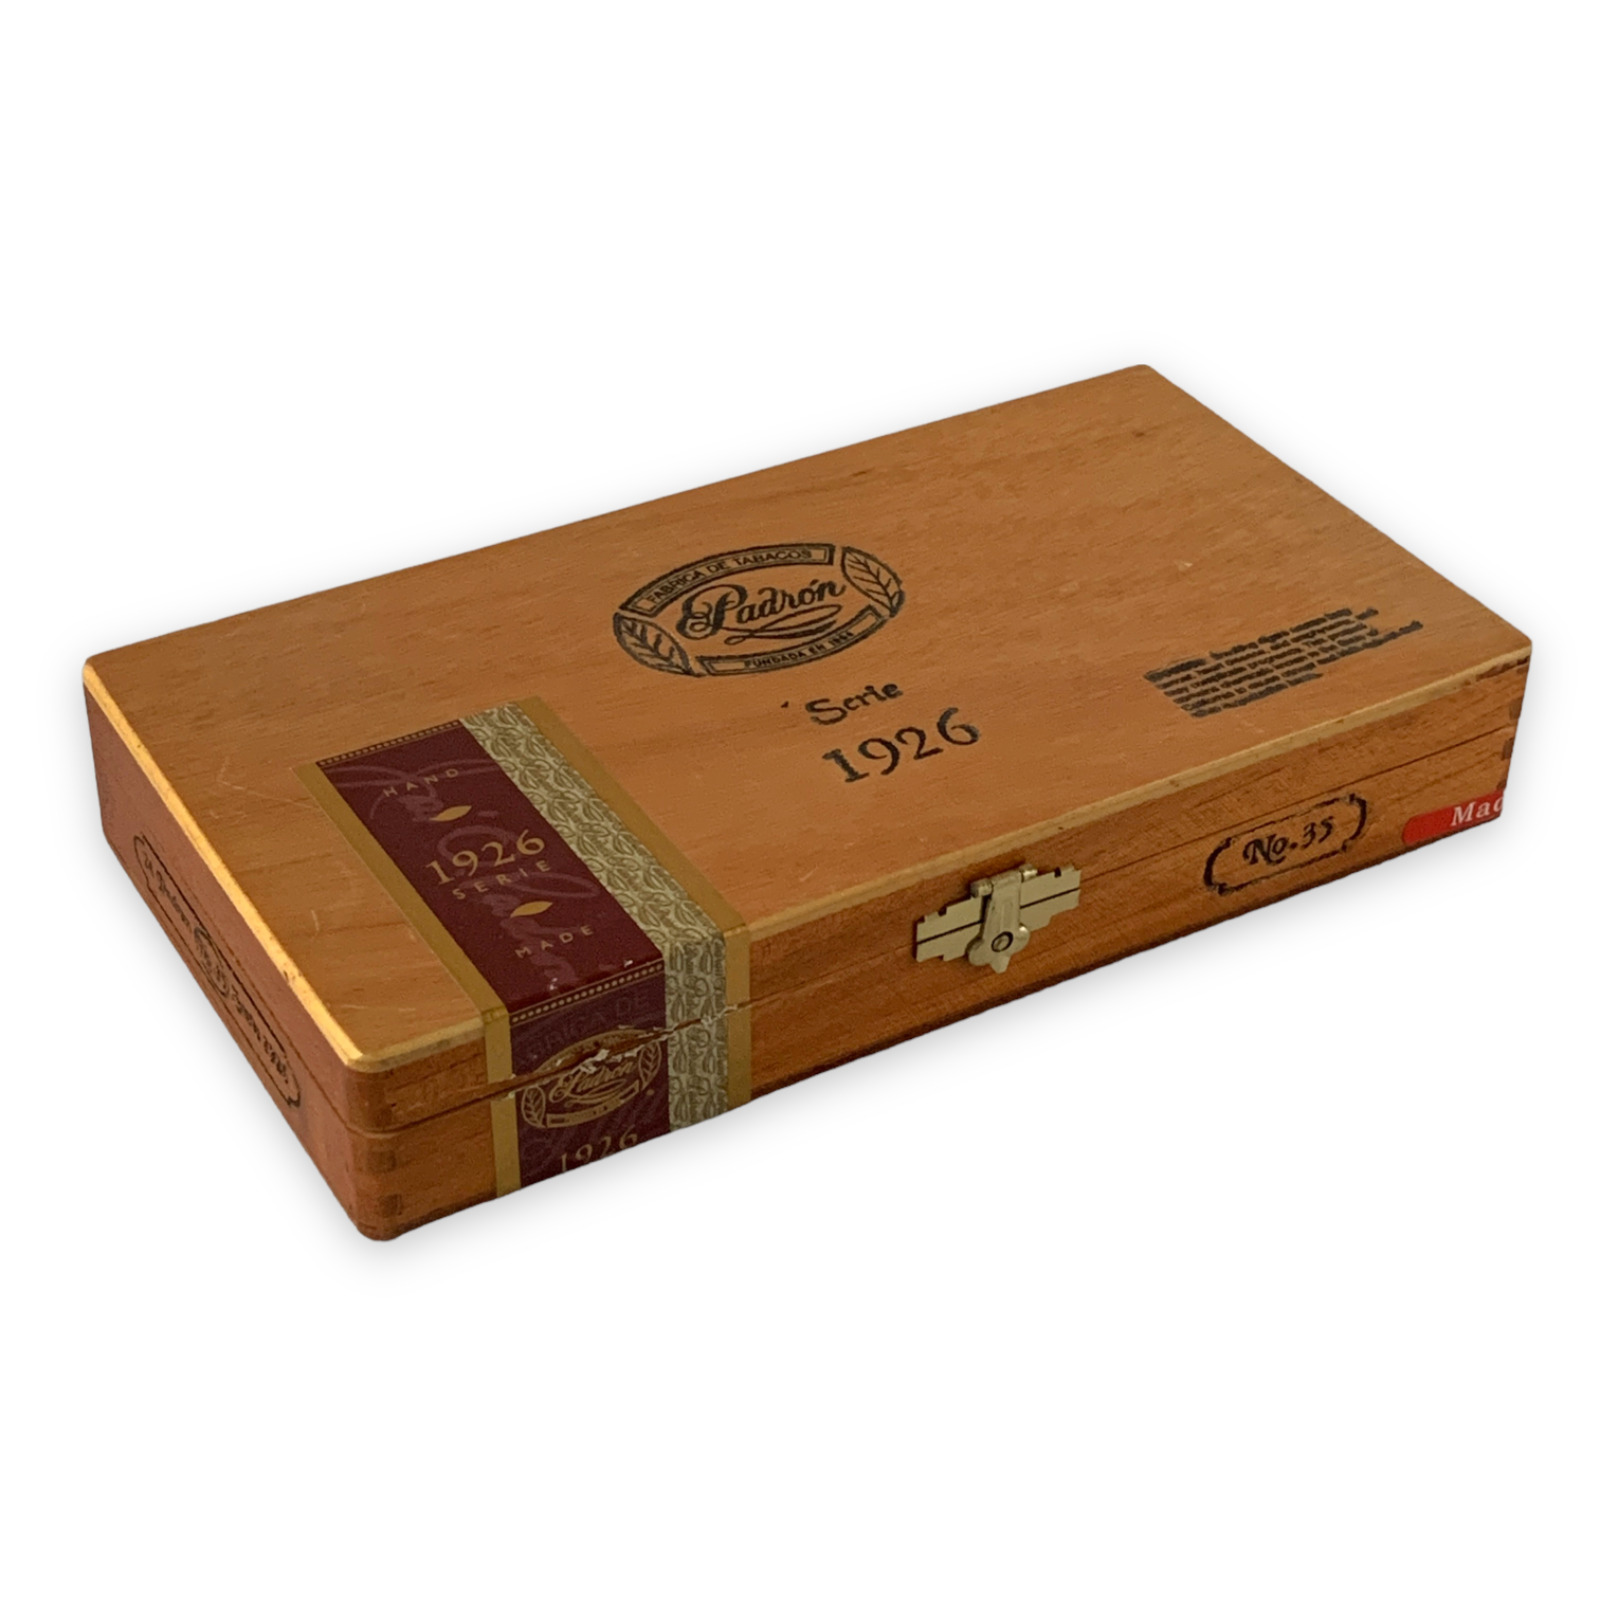 Padron Cigar Box Serie 1926 No. 35 Nicaragua